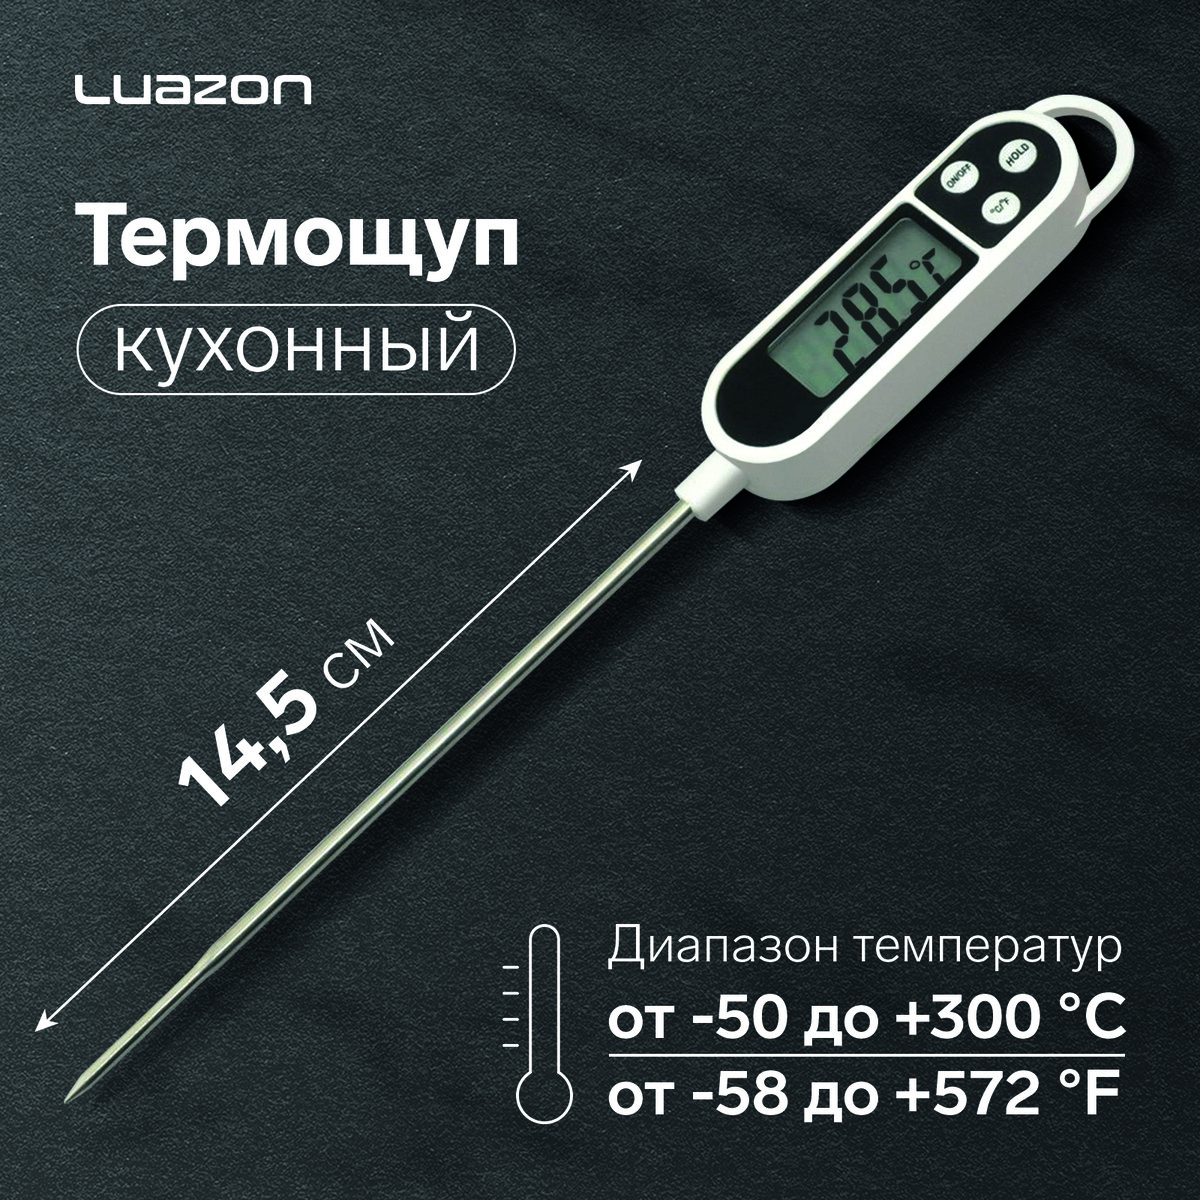 Термощуп кухонный luazon ltr-01, максимальная температура 300 °c, от lr44, белый